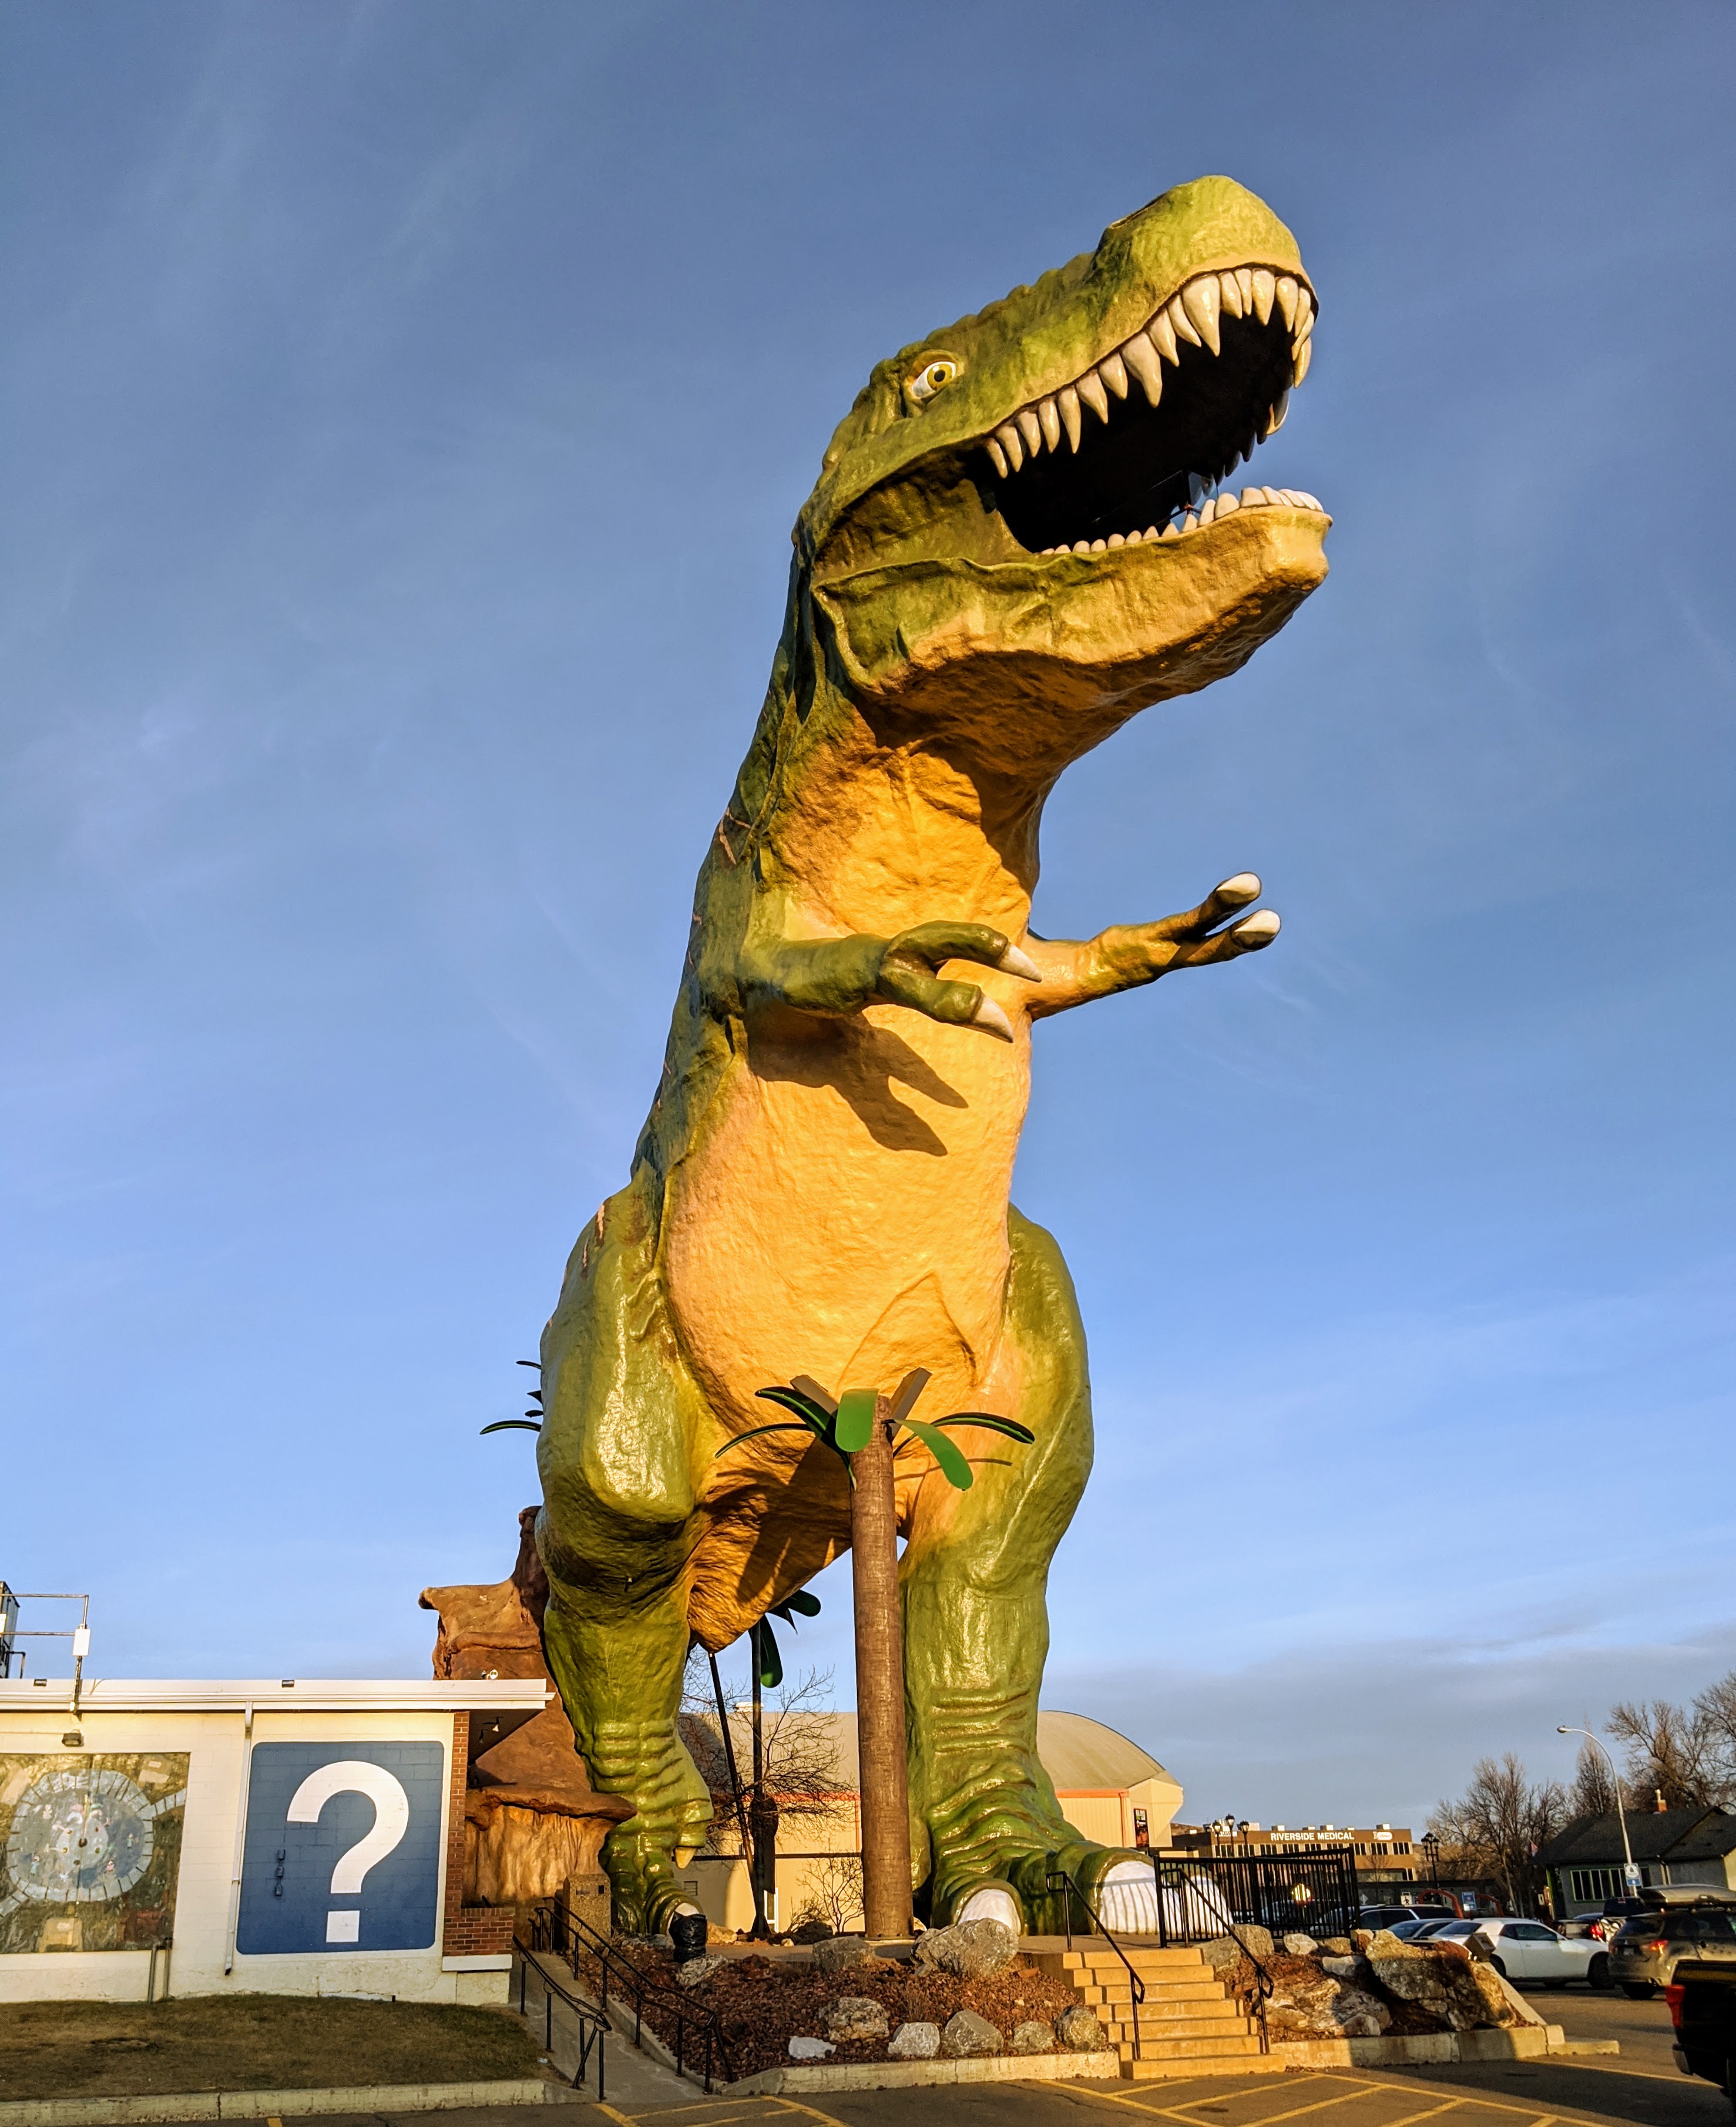 a large t-rex statue